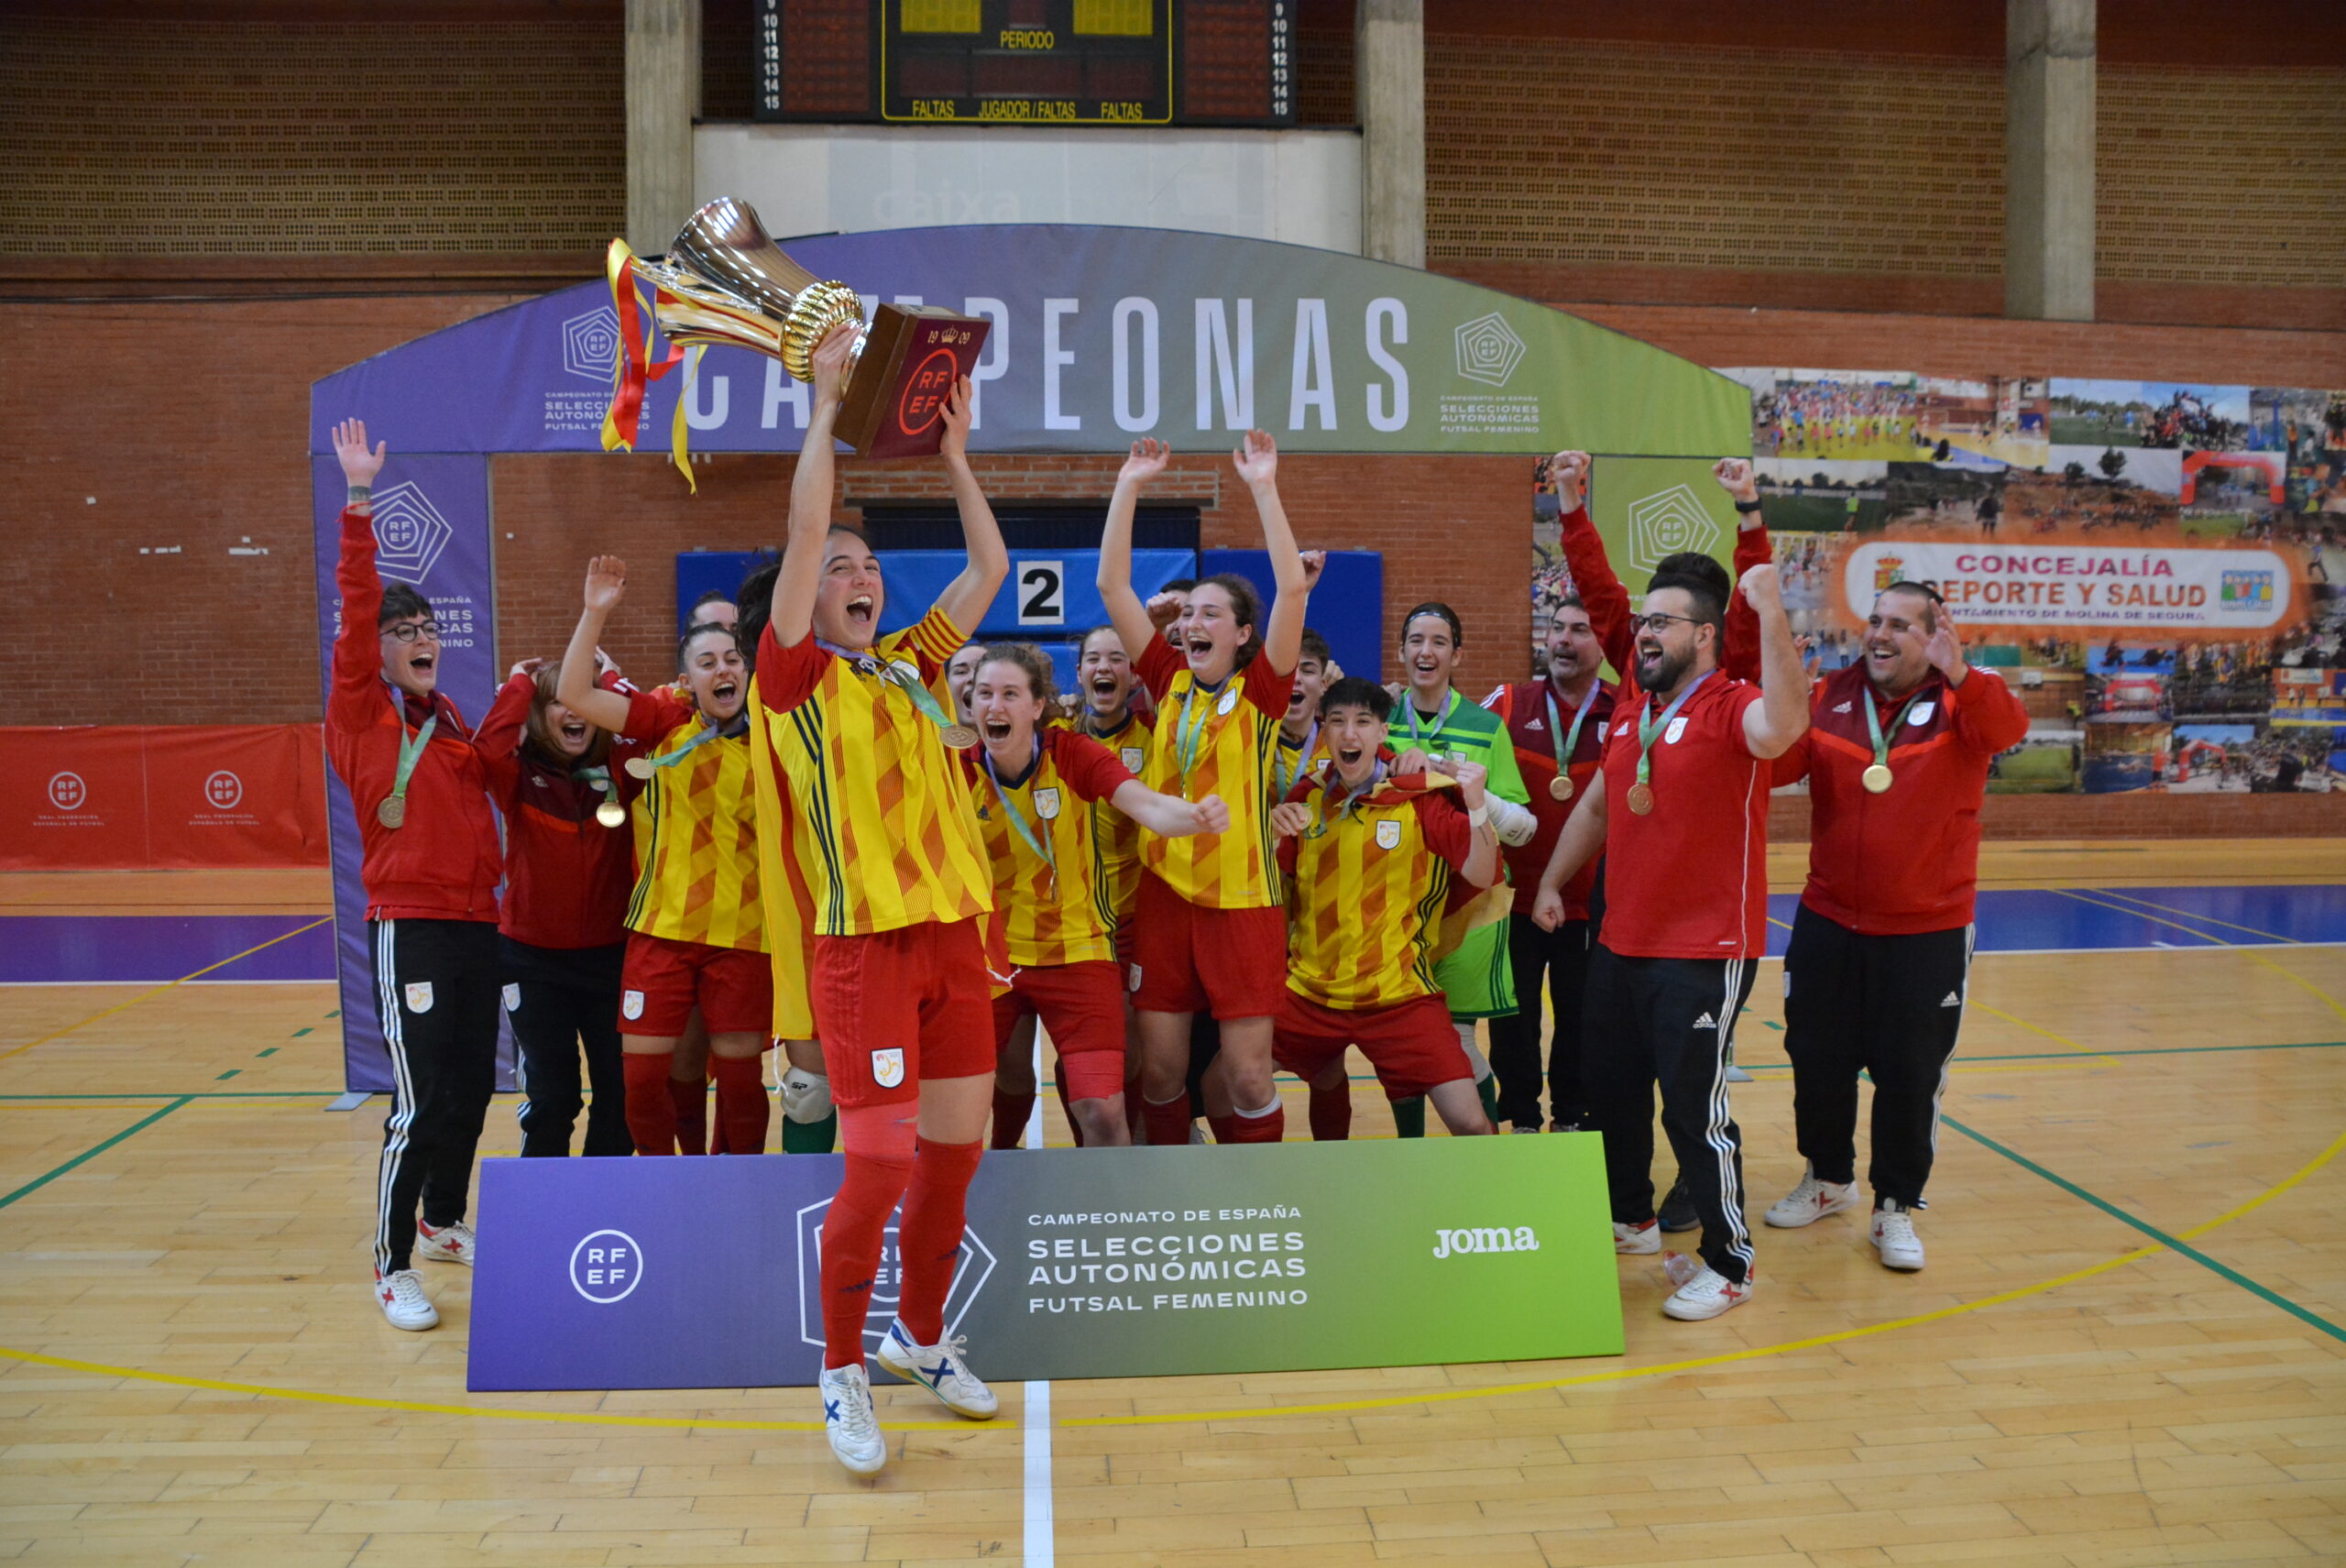 Cataluña hace doblete en el Campeonato de España de Selecciones Autonómicas Femeninas de Fútbol Sala categoría Sub 16 y Sub 19